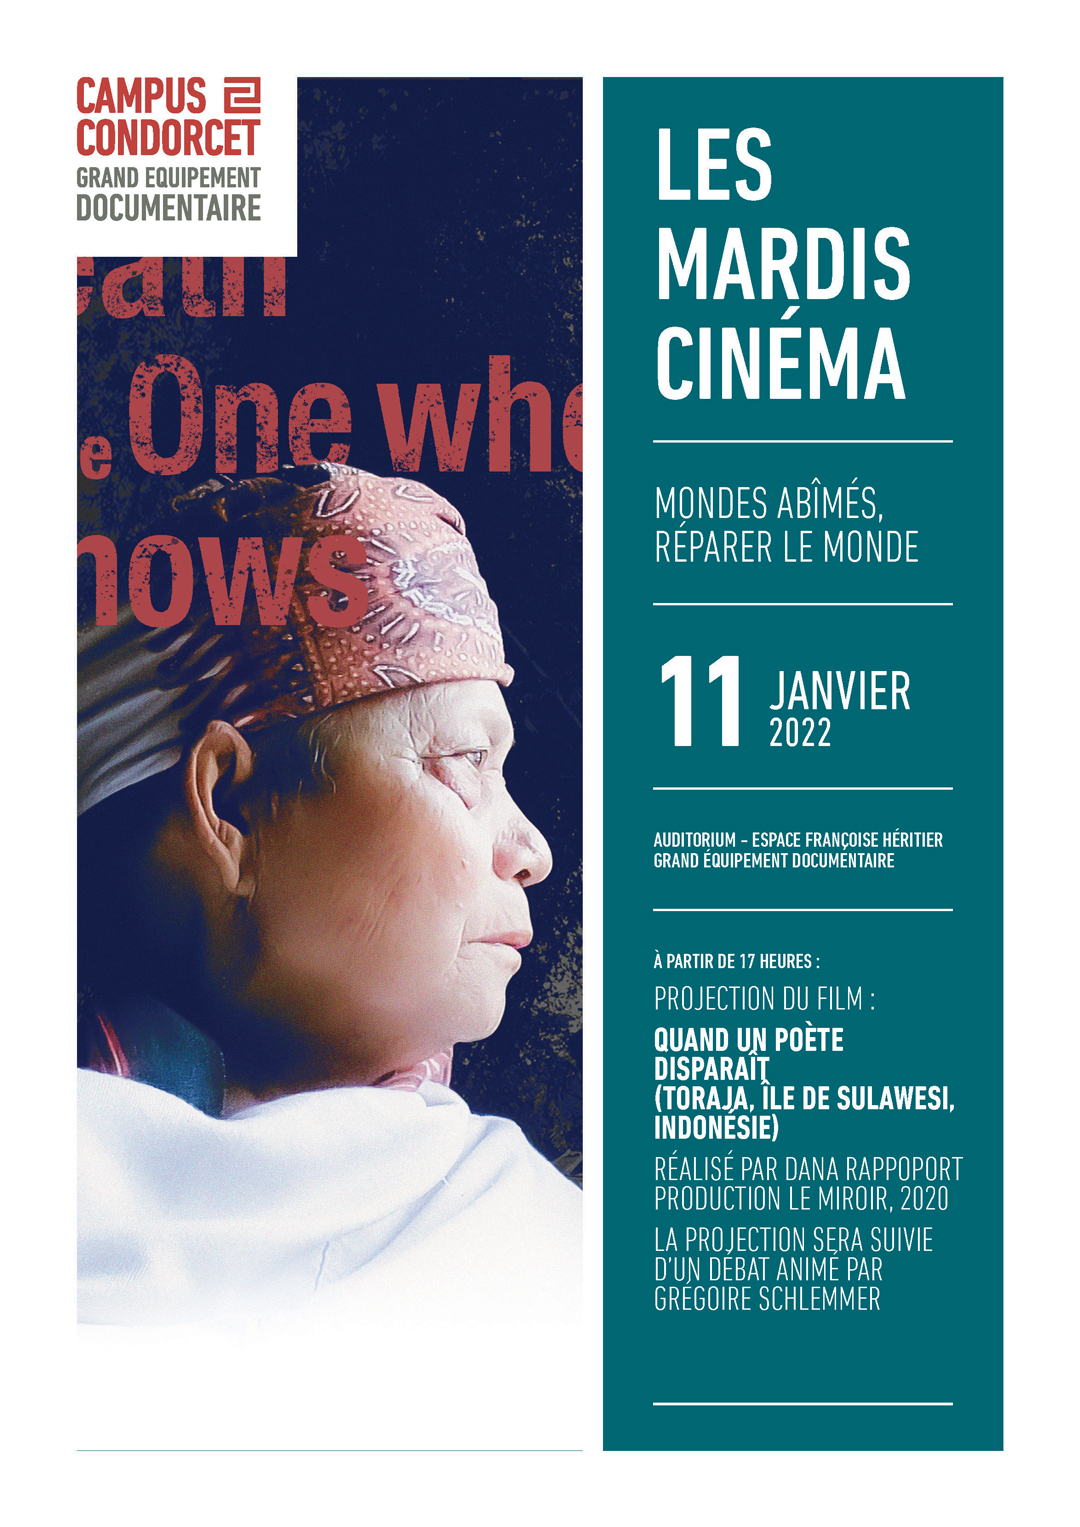 Mardis cinéma - Quand un poète disparaît (Toraja, île de Sulawesi, Indonésie), réalisé par Dana Rappoport, production Le Miroir, 2020